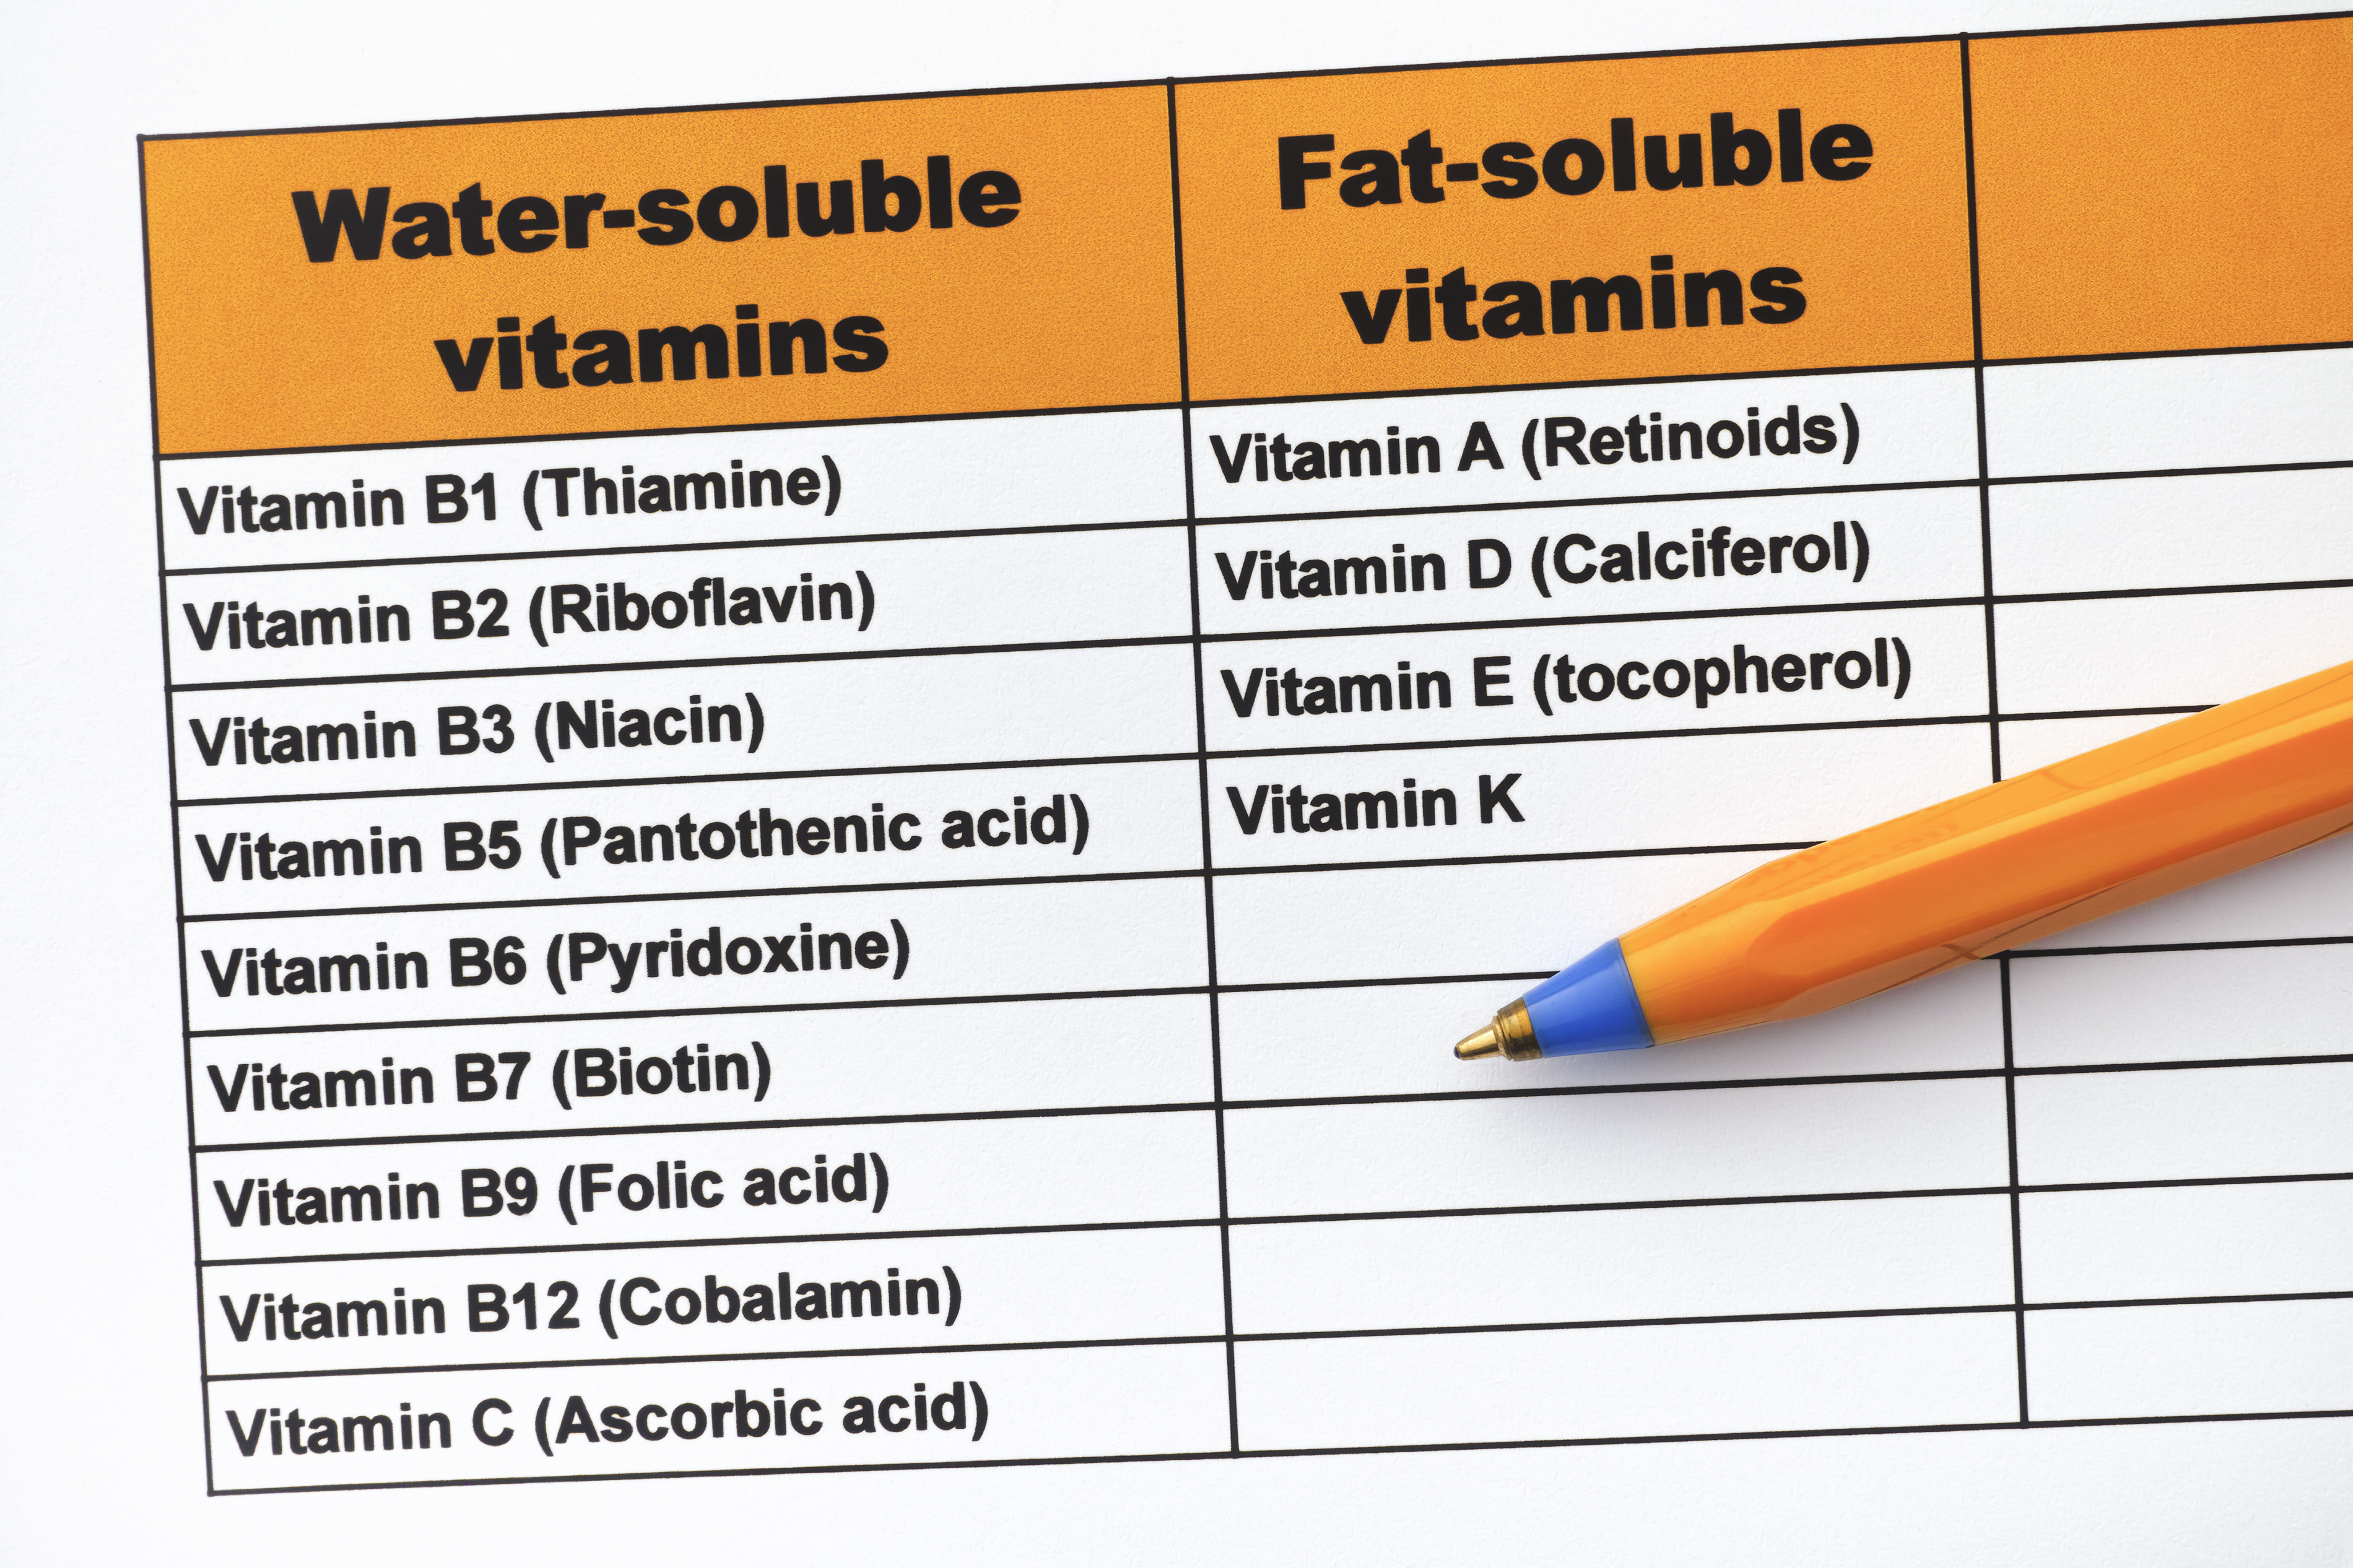 rozdělení vitaminů na rozpustné v tucích a rozpustné ve vodě.